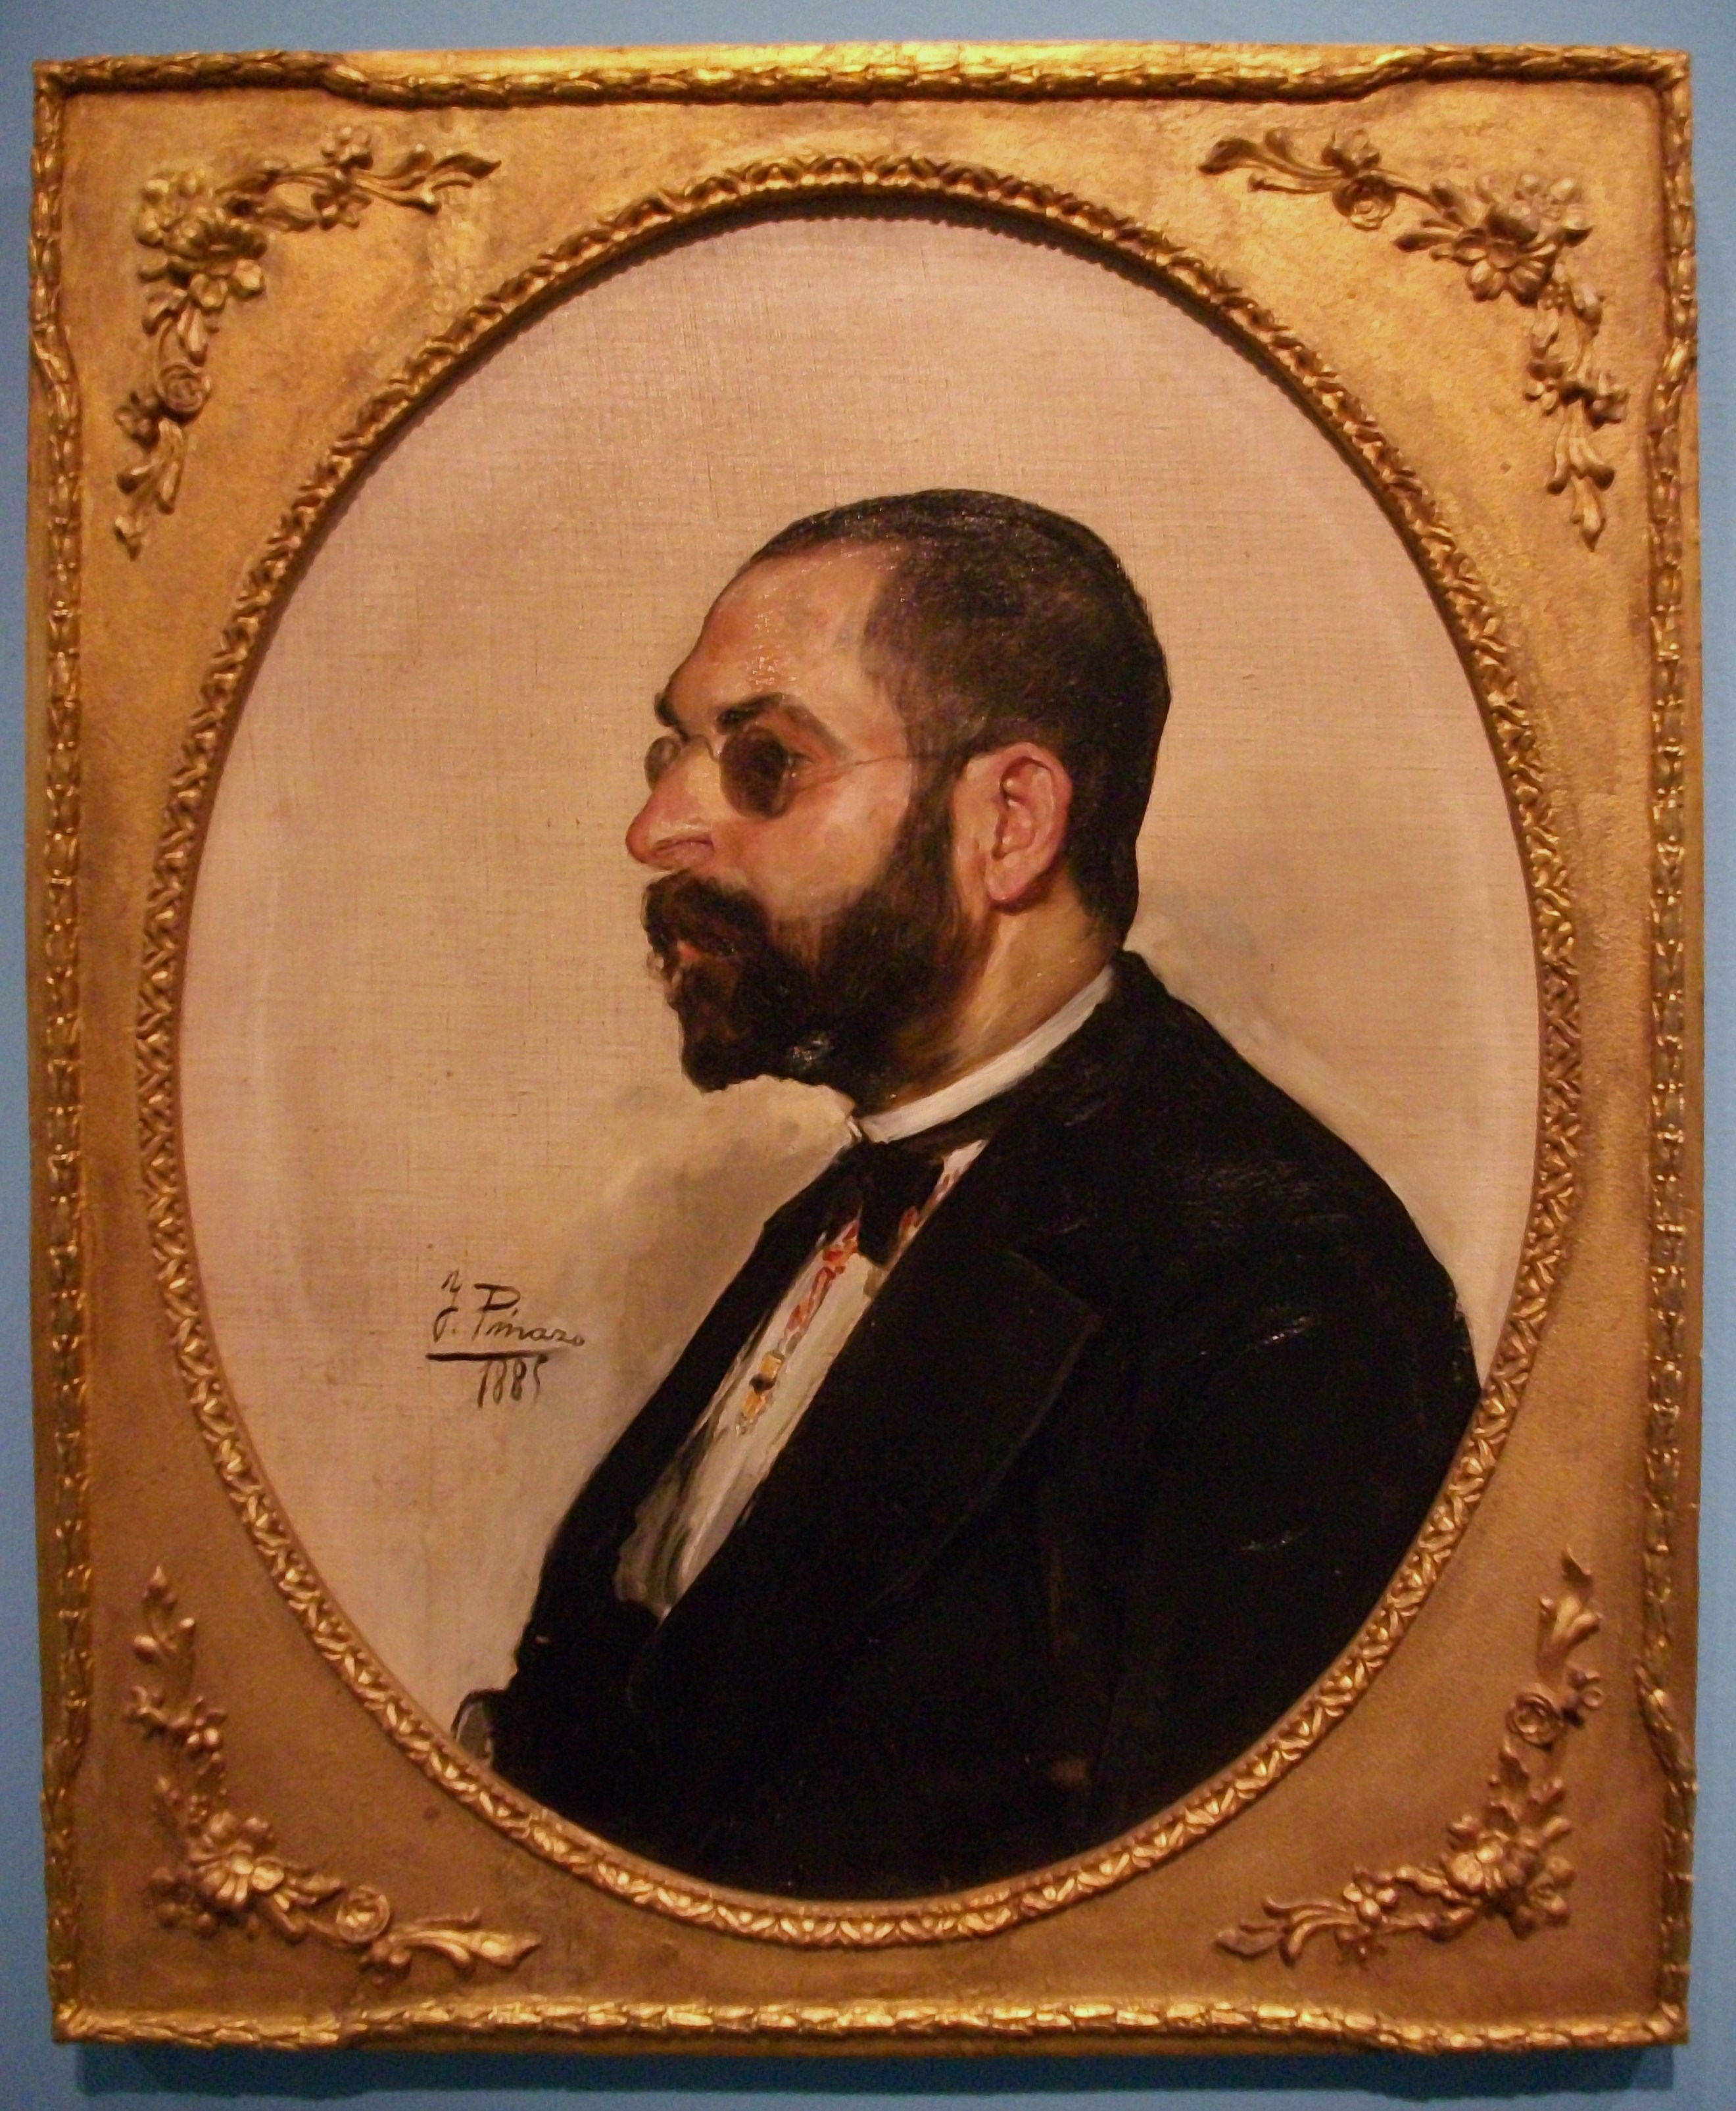 Retrat de Constantí Llombart, Ignasi Pinazo 1885